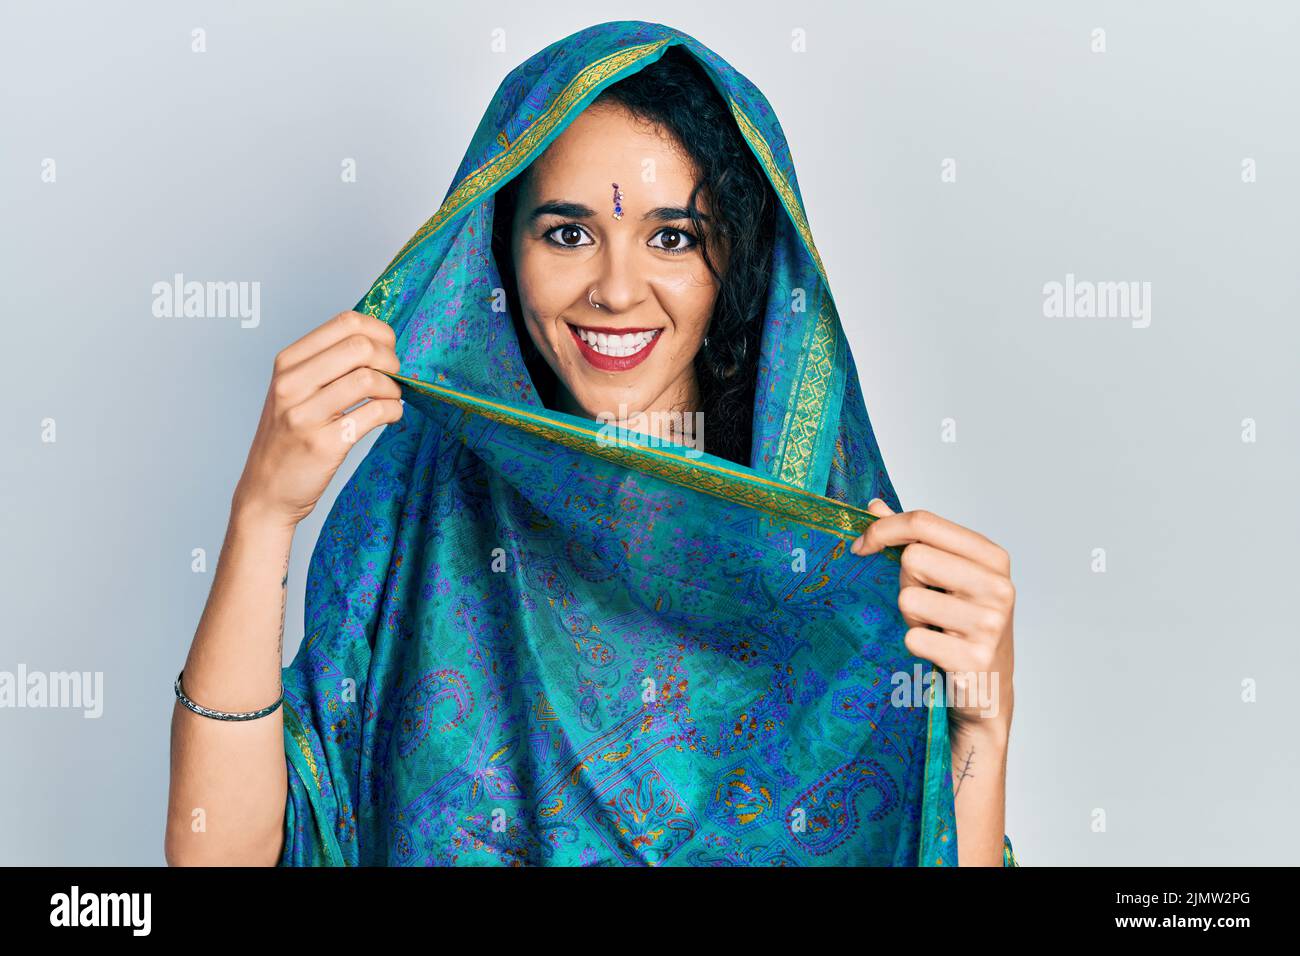 Junge Frau in Bindi, die traditionelle indische Saree trägt, zeigt den Daumen nach oben zur Seite und lächelt glücklich mit offenem Mund Stockfoto